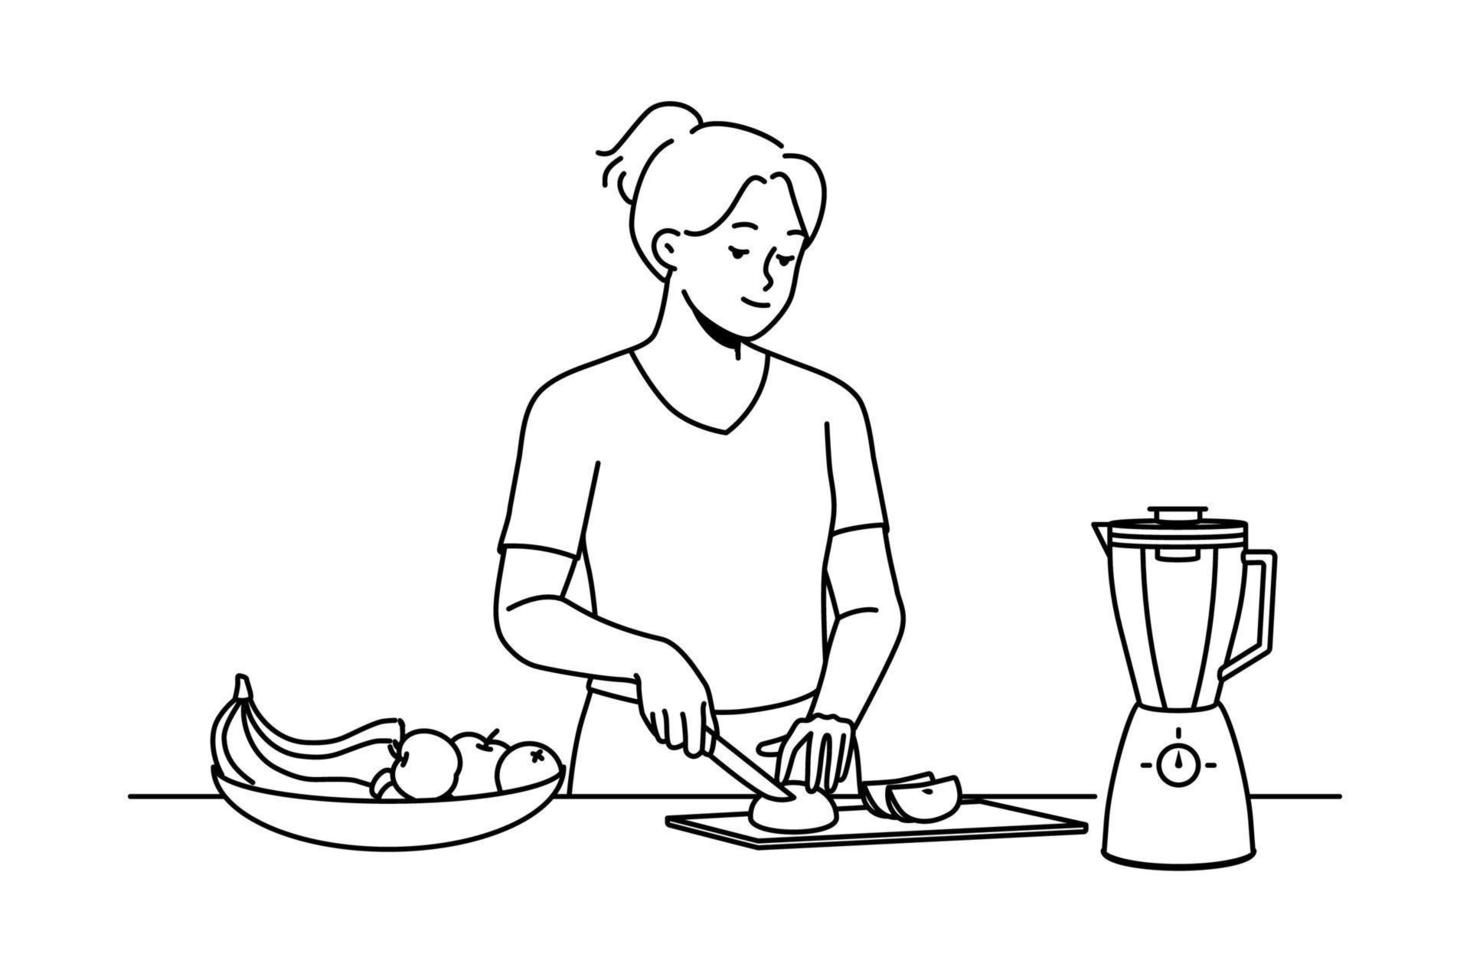 mujer joven feliz cortando frutas para batido. niña sonriente corta fruta fresca en la cocina sigue un estilo de vida saludable. ilustración vectorial vector